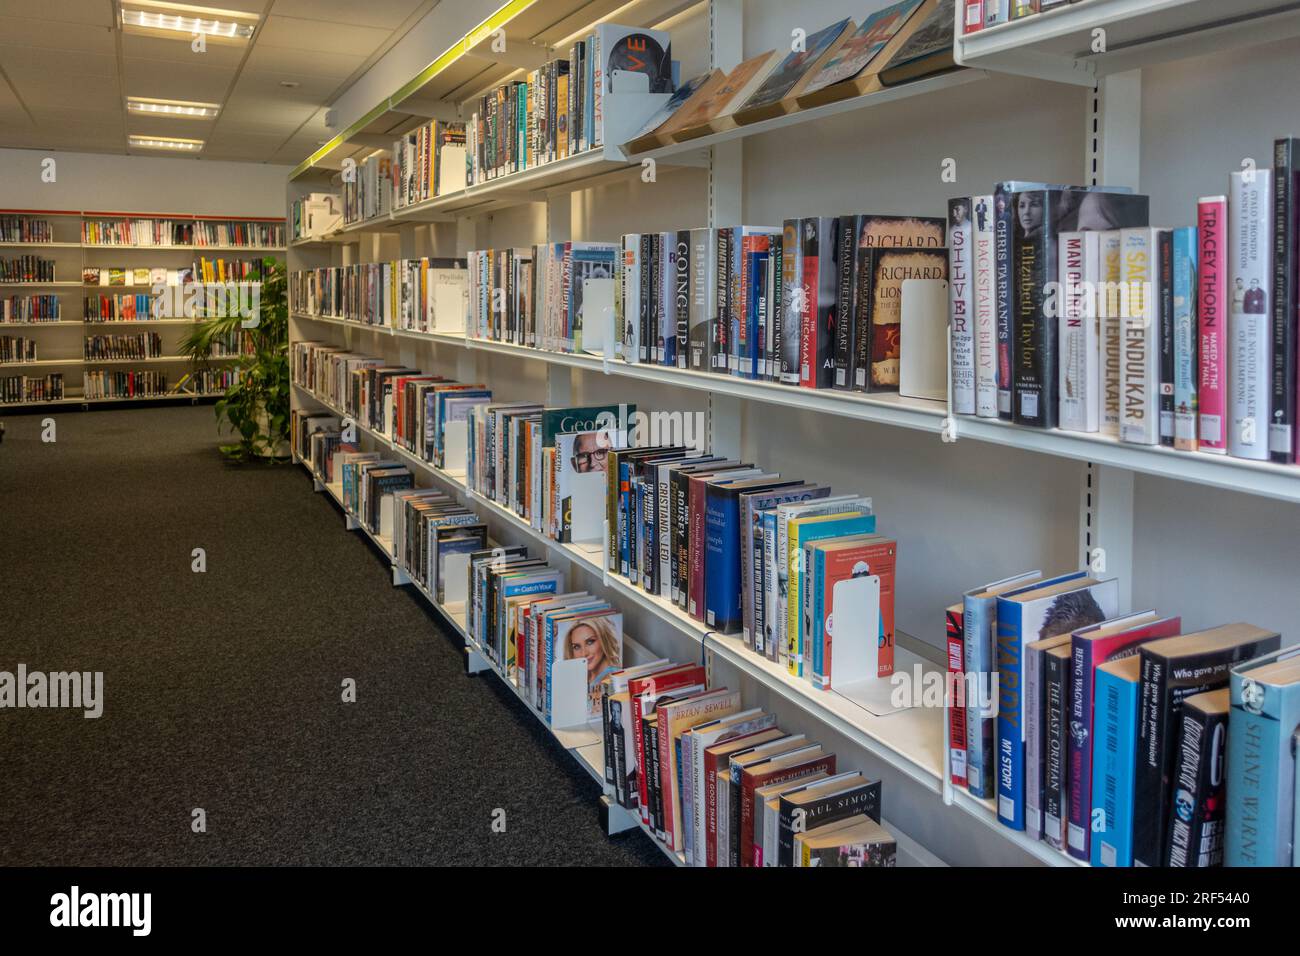 Intérieur de la bibliothèque locale de la ville de Farnborough avec des livres disponibles à emprunter sur des étagères, Hampshire, Angleterre, Royaume-Uni Banque D'Images